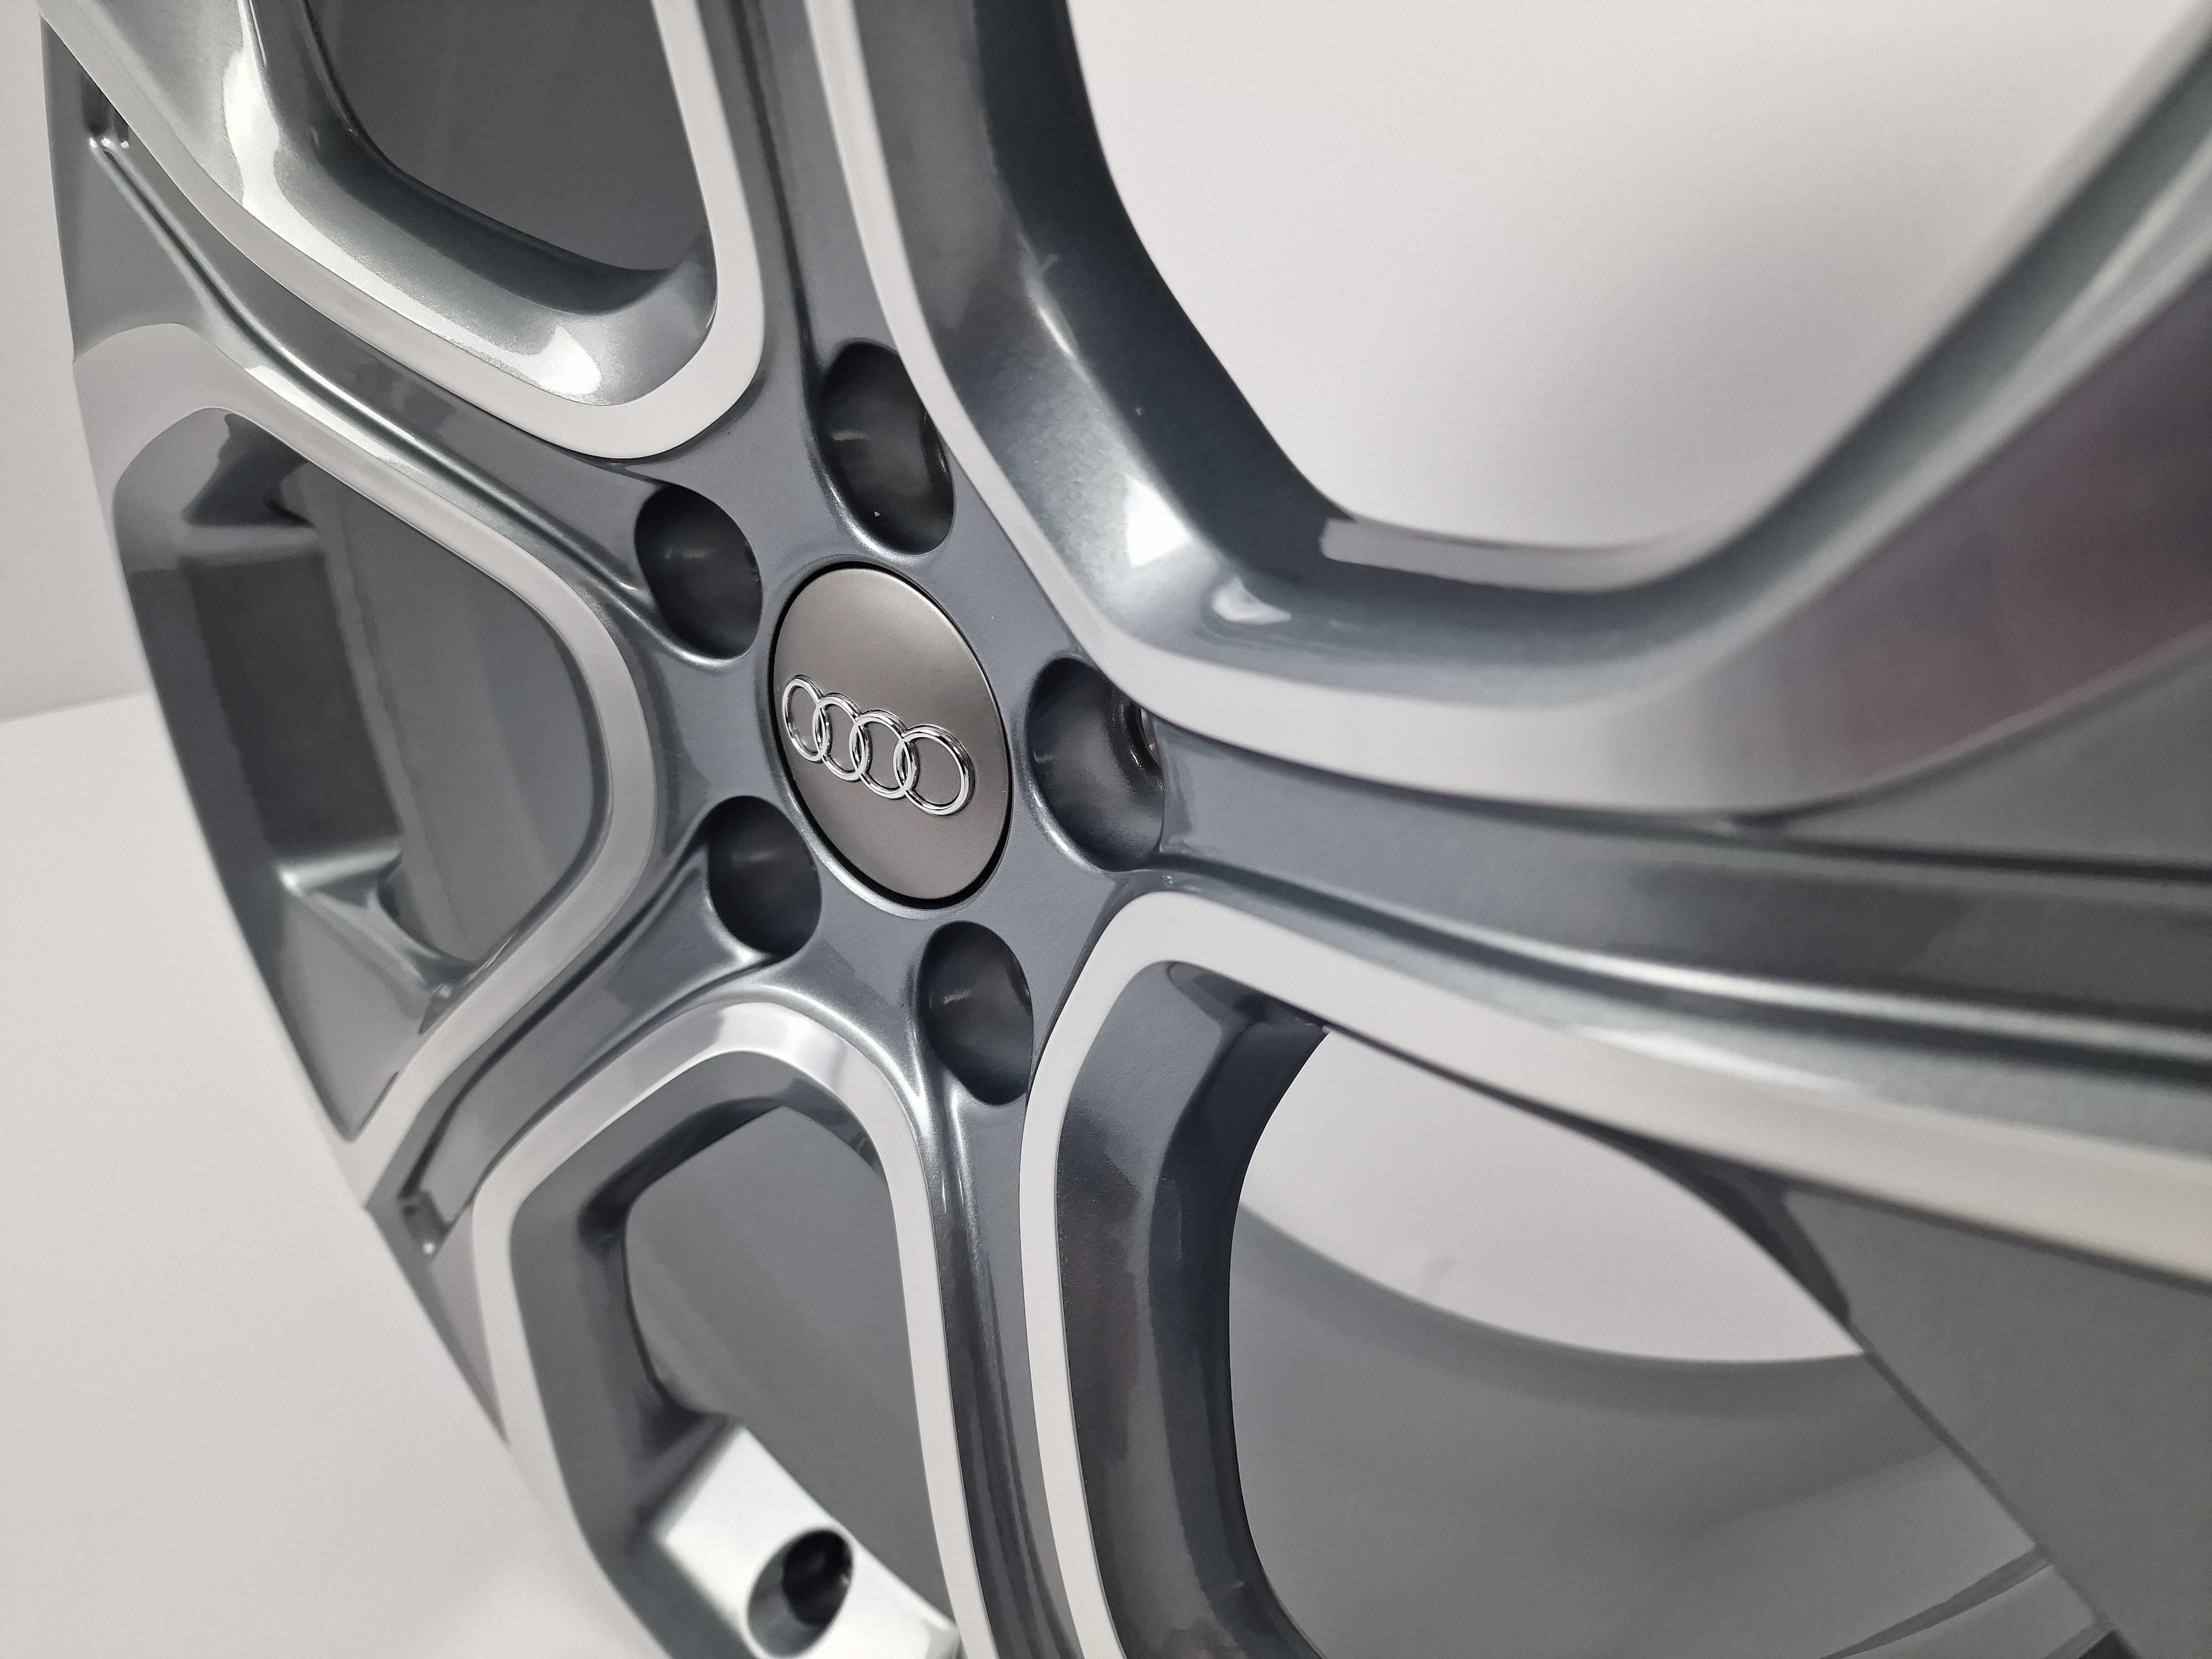 FABRYCZNIE NOWE Oryginalne Felgi Audi 18 A1 S1 A3 TT VW Seat Skoda